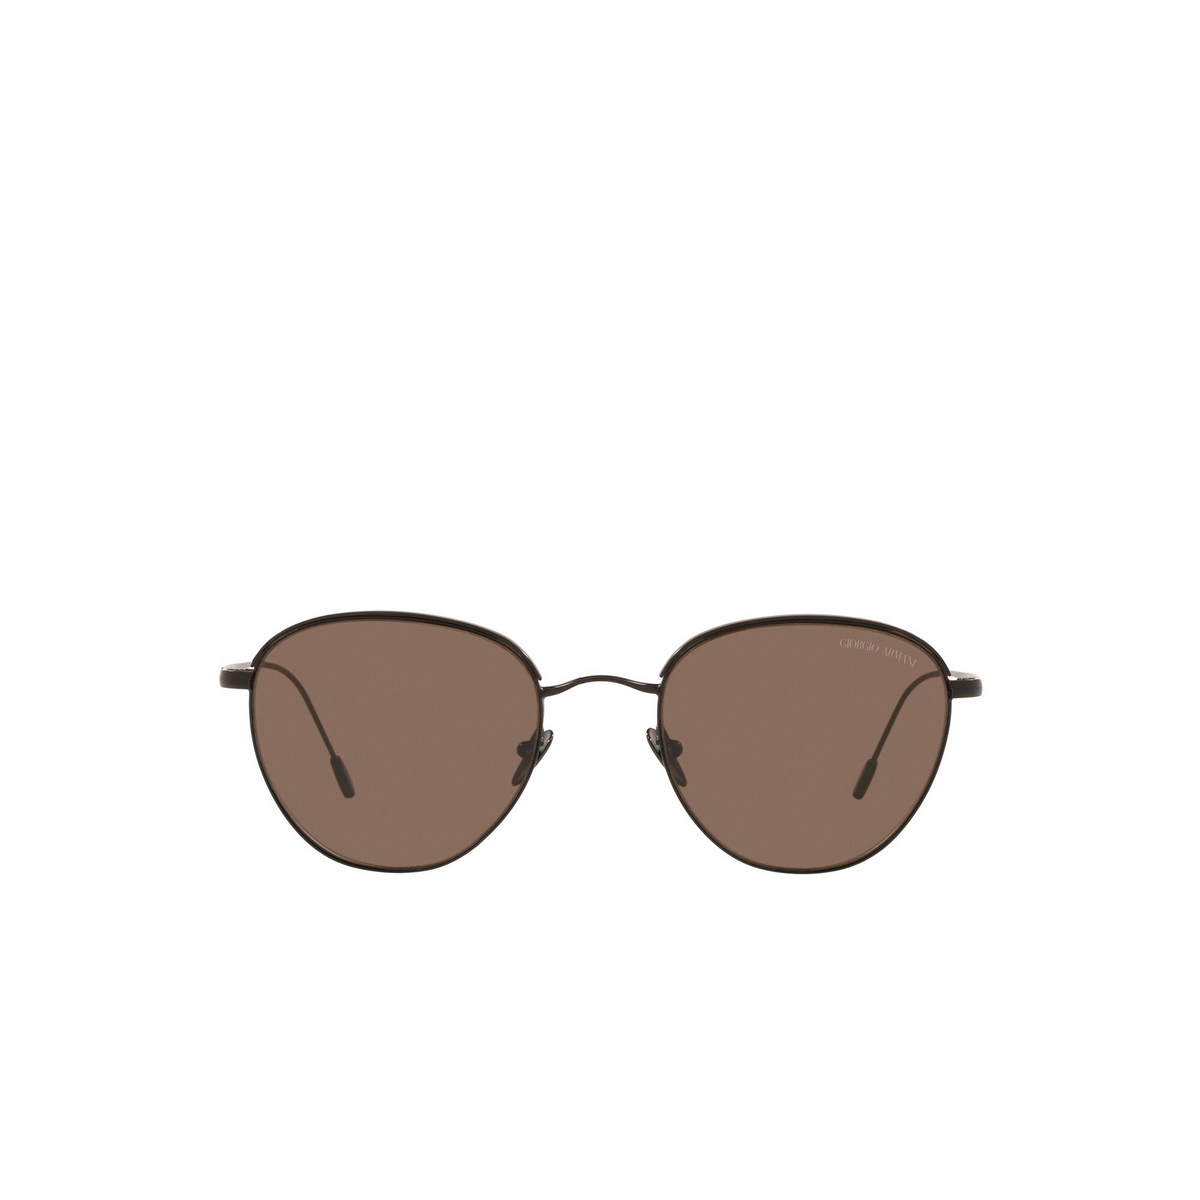 Giorgio Armani® Square Sunglasses: AR6048 color Matte Black 300173 - front view.